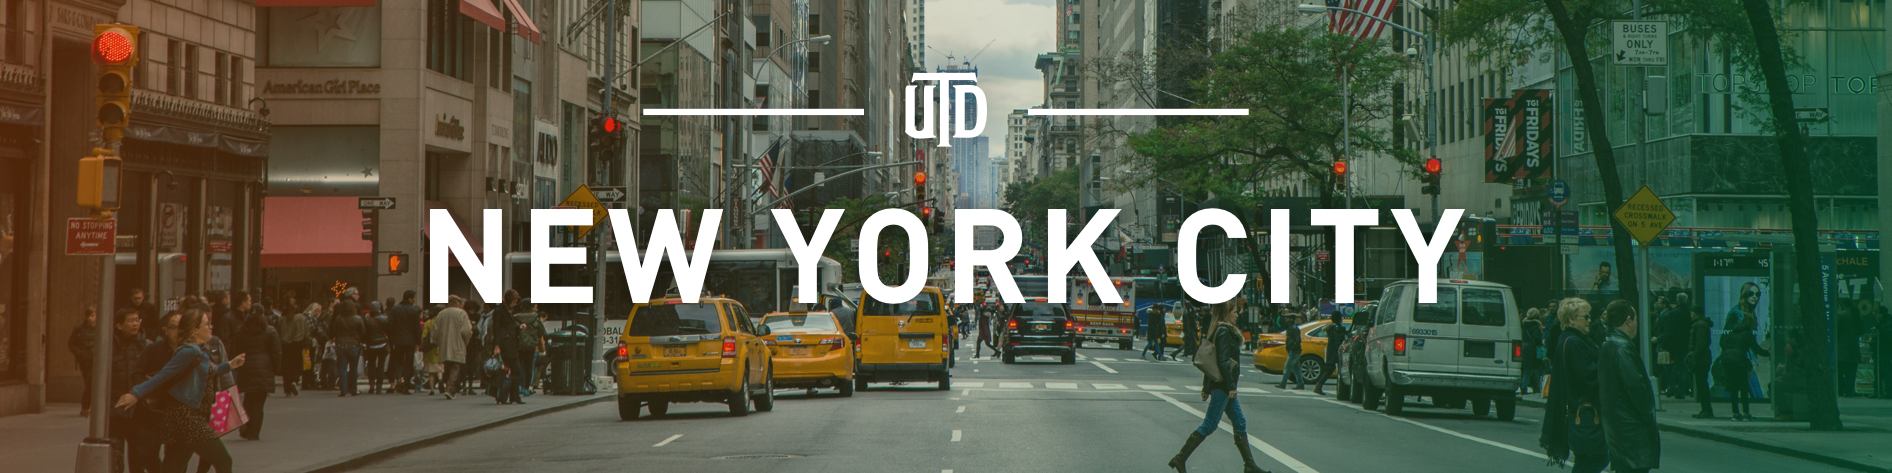 UTD in New York City